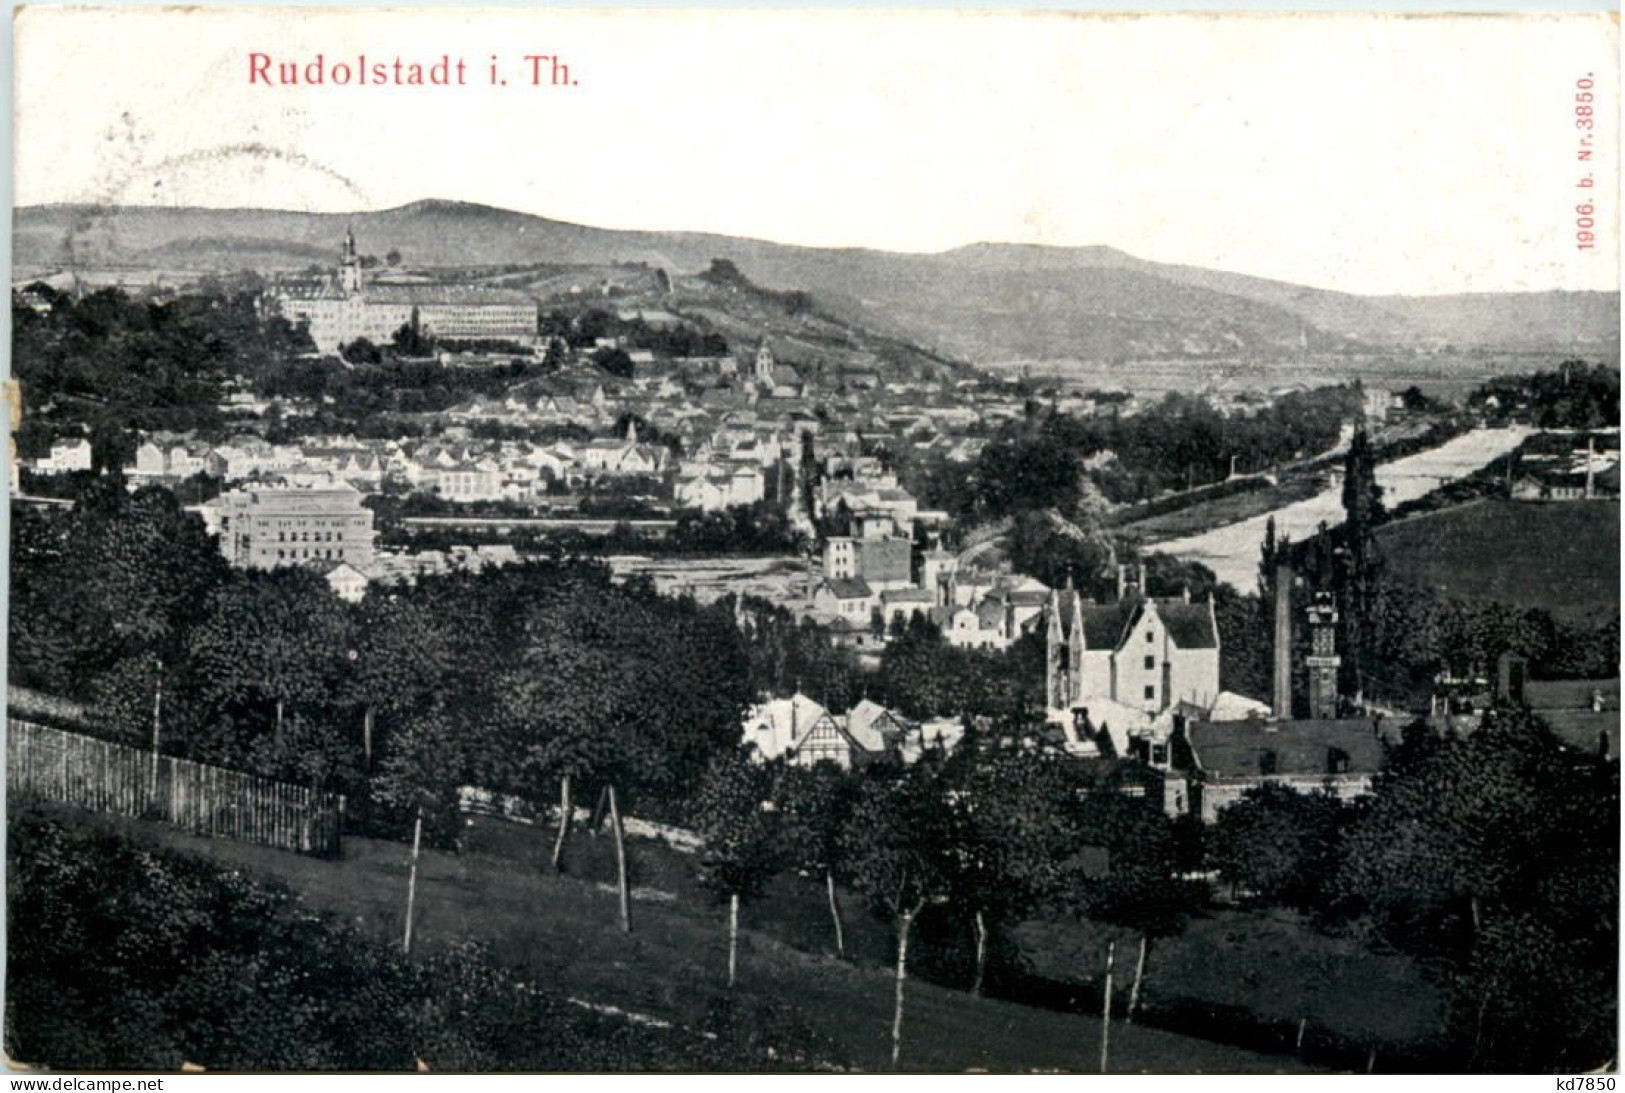 Rudolstadt - Rudolstadt